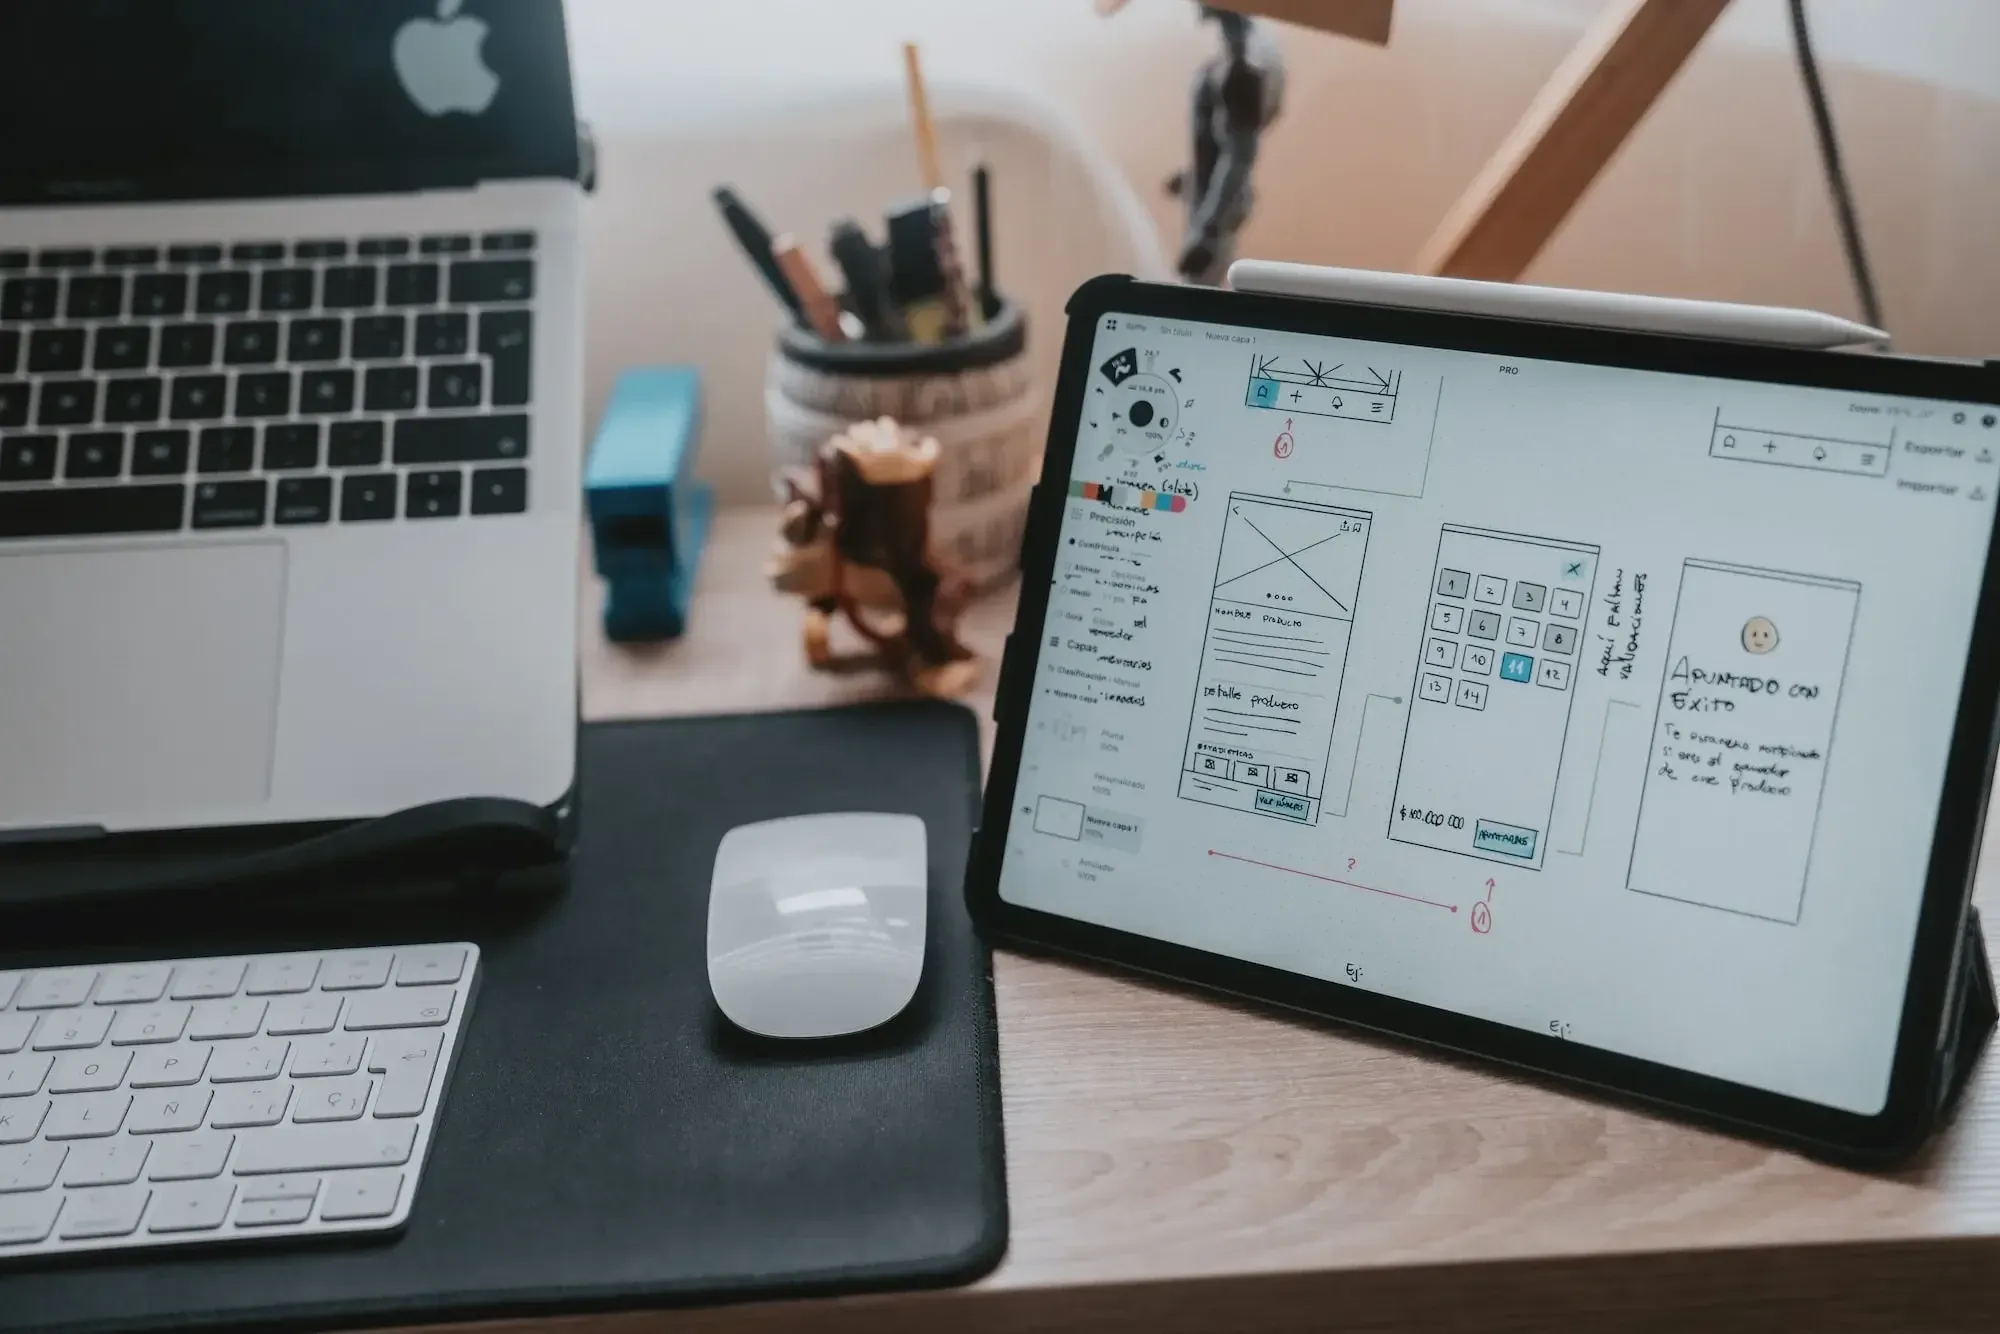 Arbeitsplatz mit Macbook, Tablet, Maus und Tastatur, Tacker, Stifthalter, das Tablet im Zentrum, auf dem Screen ein Product Design Portfolio Entwurf